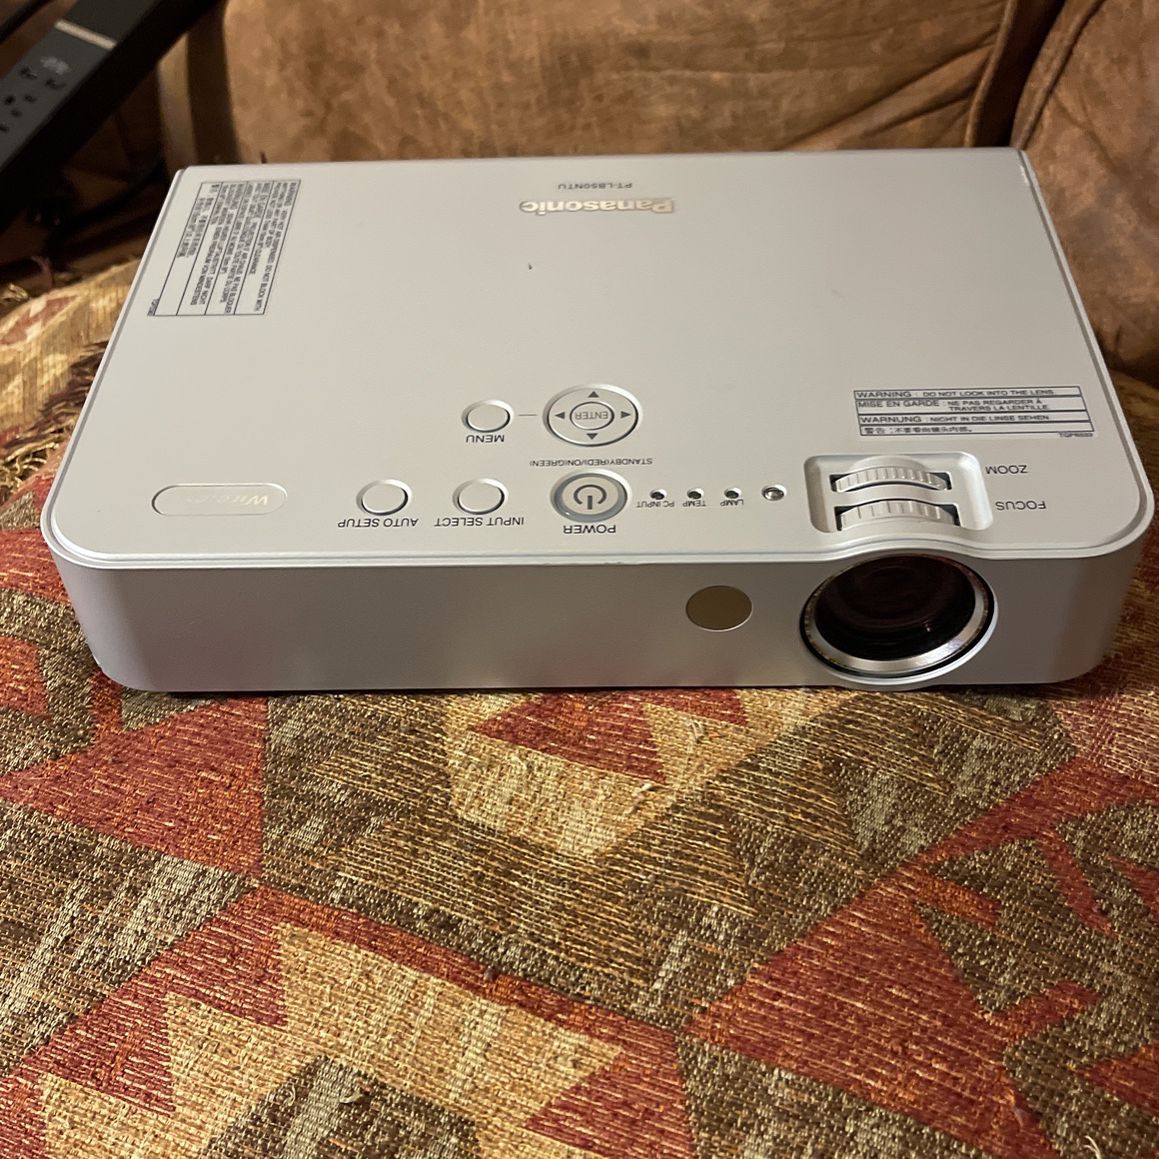 Huiswerk kralen vertrouwen Panasonic Projector for Sale in Houston, TX - OfferUp